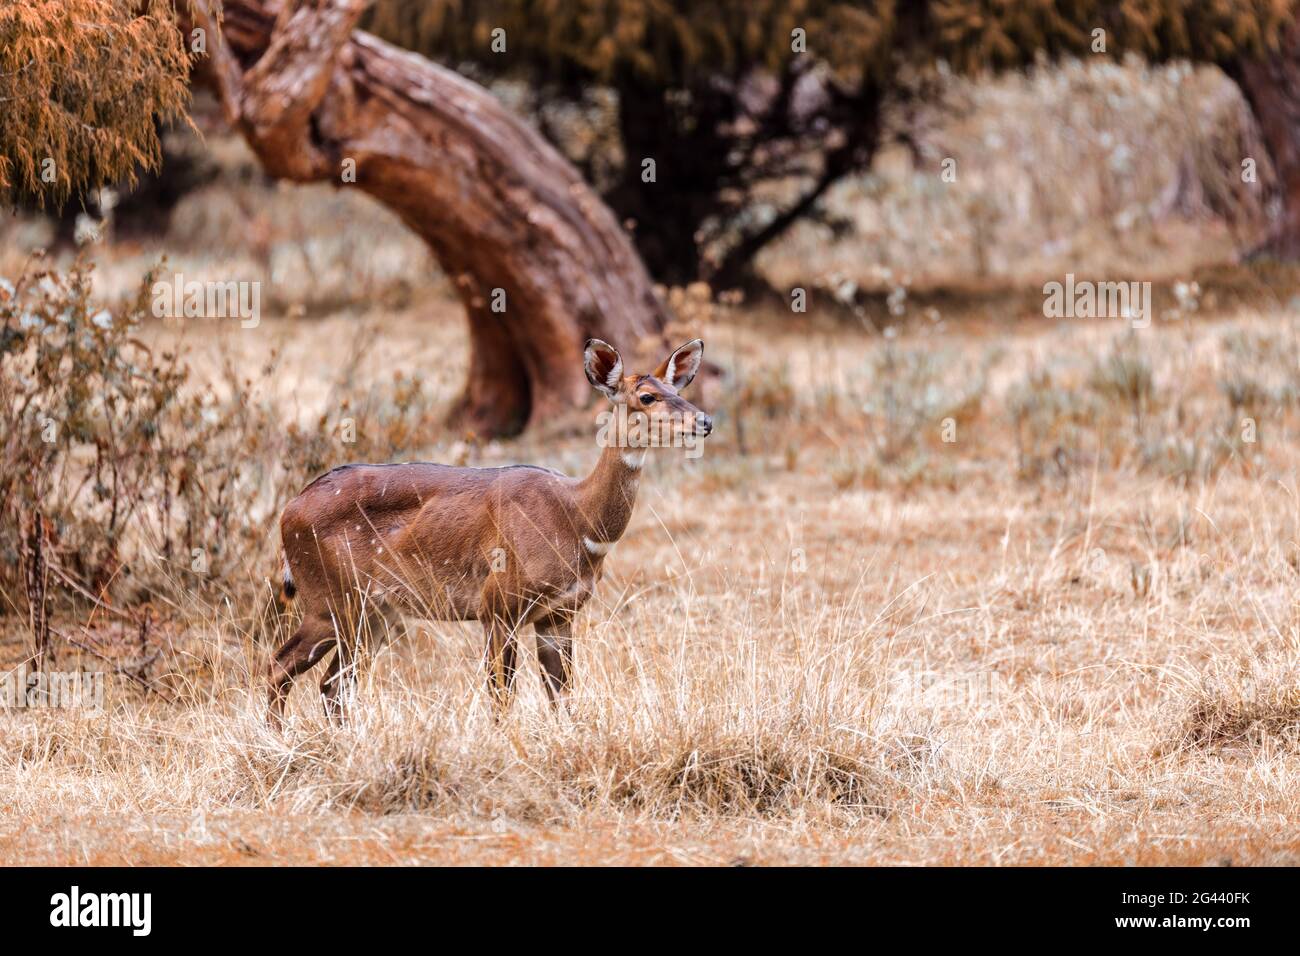 Mountain nyala, Ethiopia, Africa wildlife Stock Photo